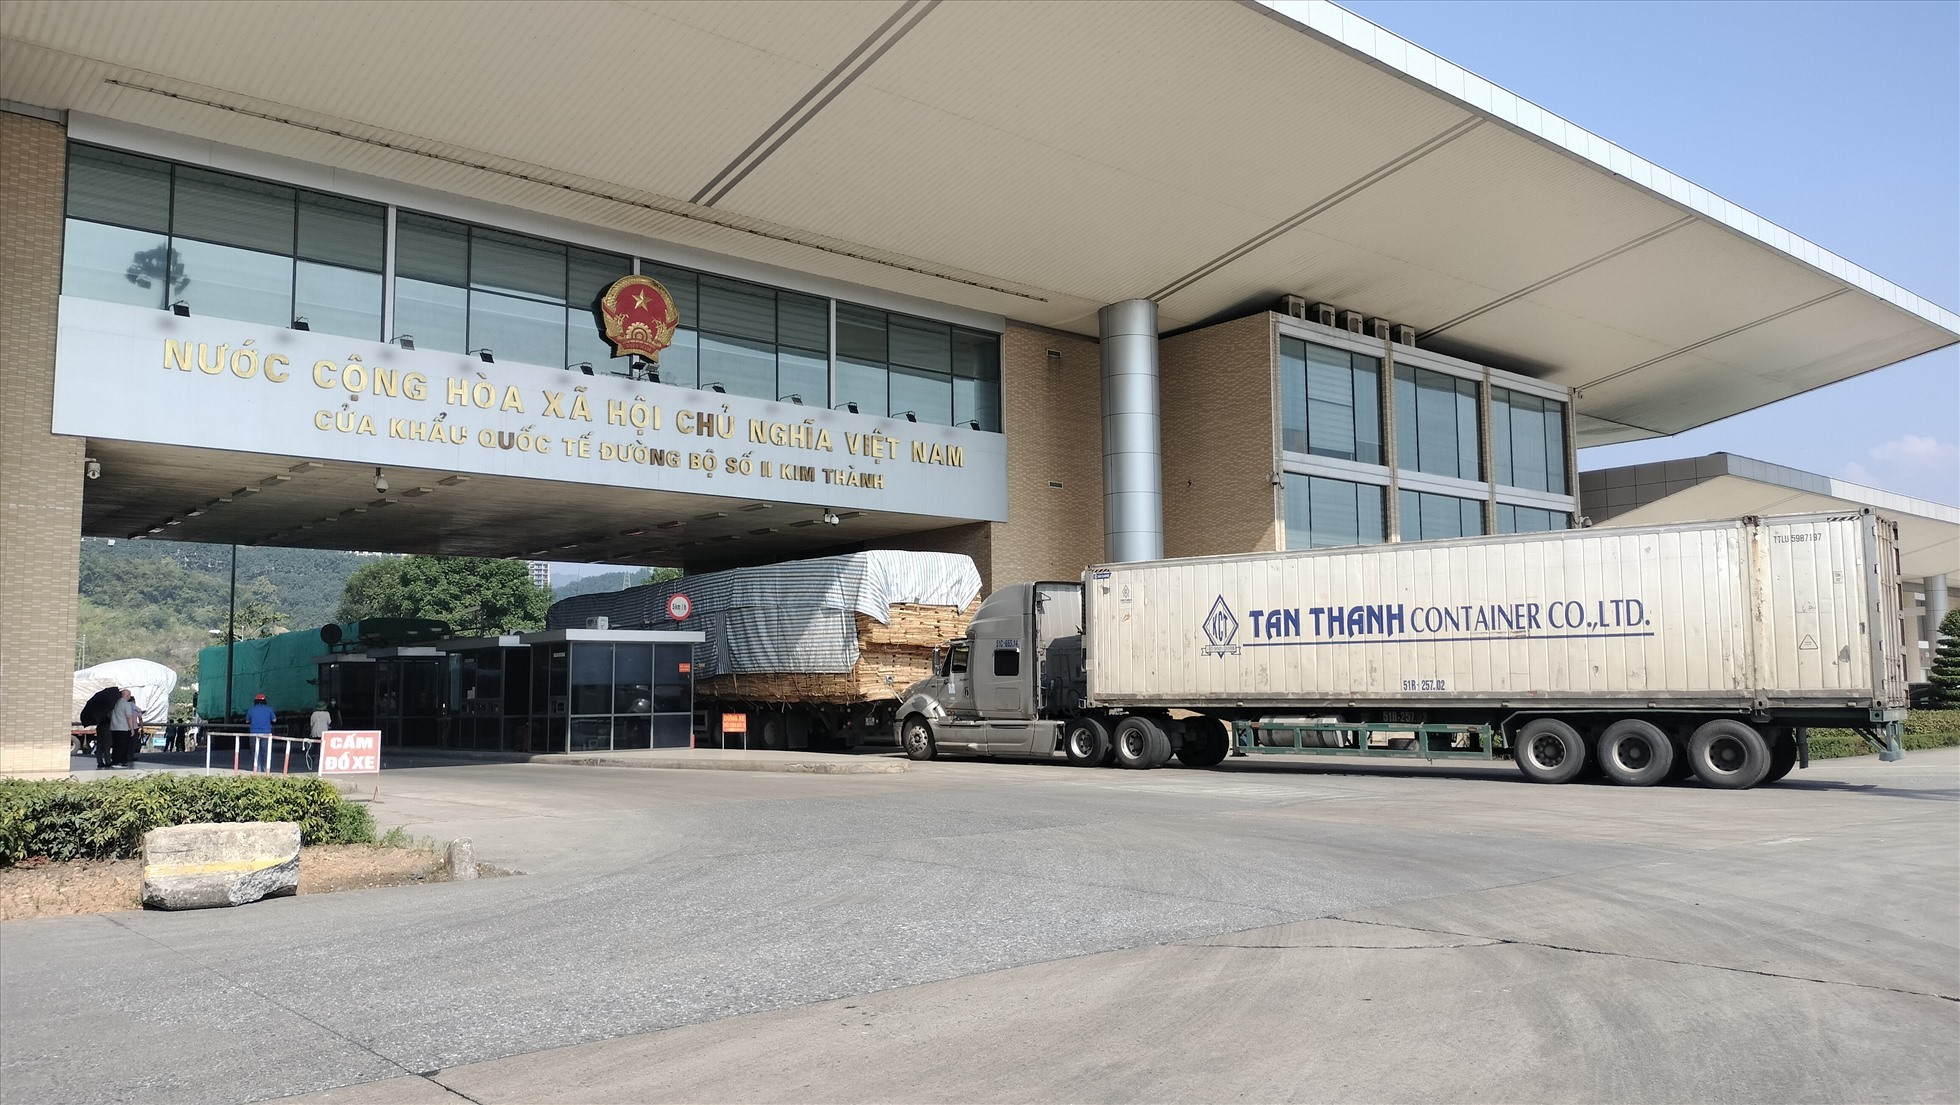 Cửa khẩu biên giới Việt - Trung tại Lào Cai dự kiến mở cửa hoàn toàn từ 8.1. Ảnh: Văn Đức